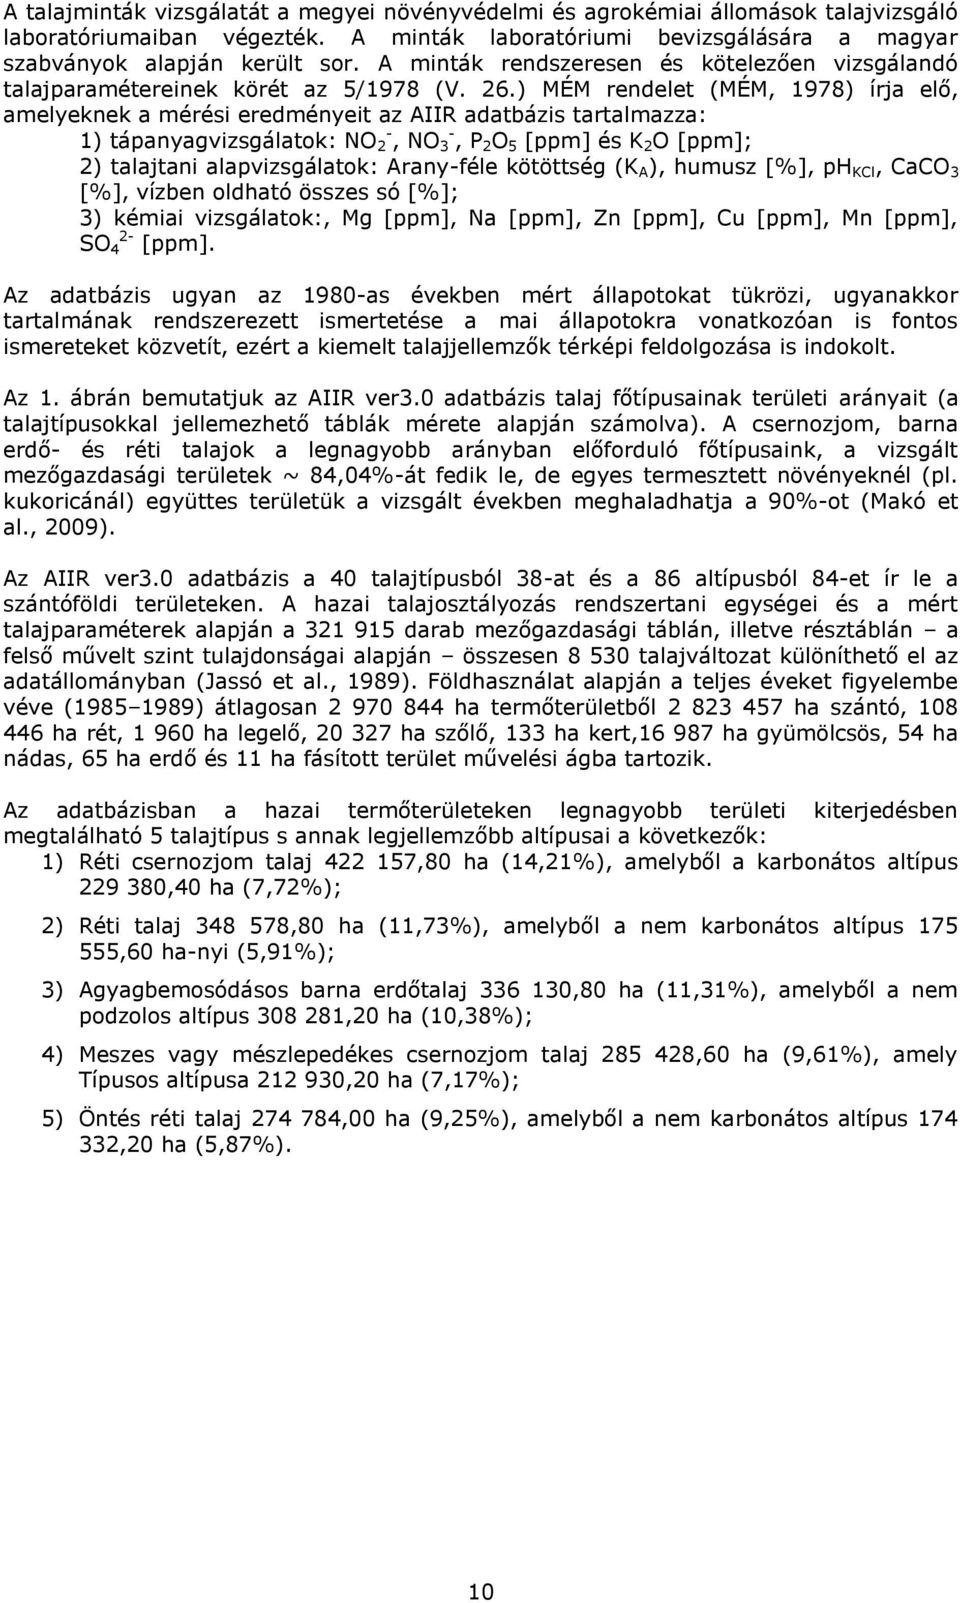 ) MÉM rendelet (MÉM, 1978) írja elő, amelyeknek a mérési eredményeit az AIIR adatbázis tartalmazza: 1) tápanyagvizsgálatok: NO 2 -, NO 3 -, P 2 O 5 [ppm] és K 2 O [ppm]; 2) talajtani alapvizsgálatok: